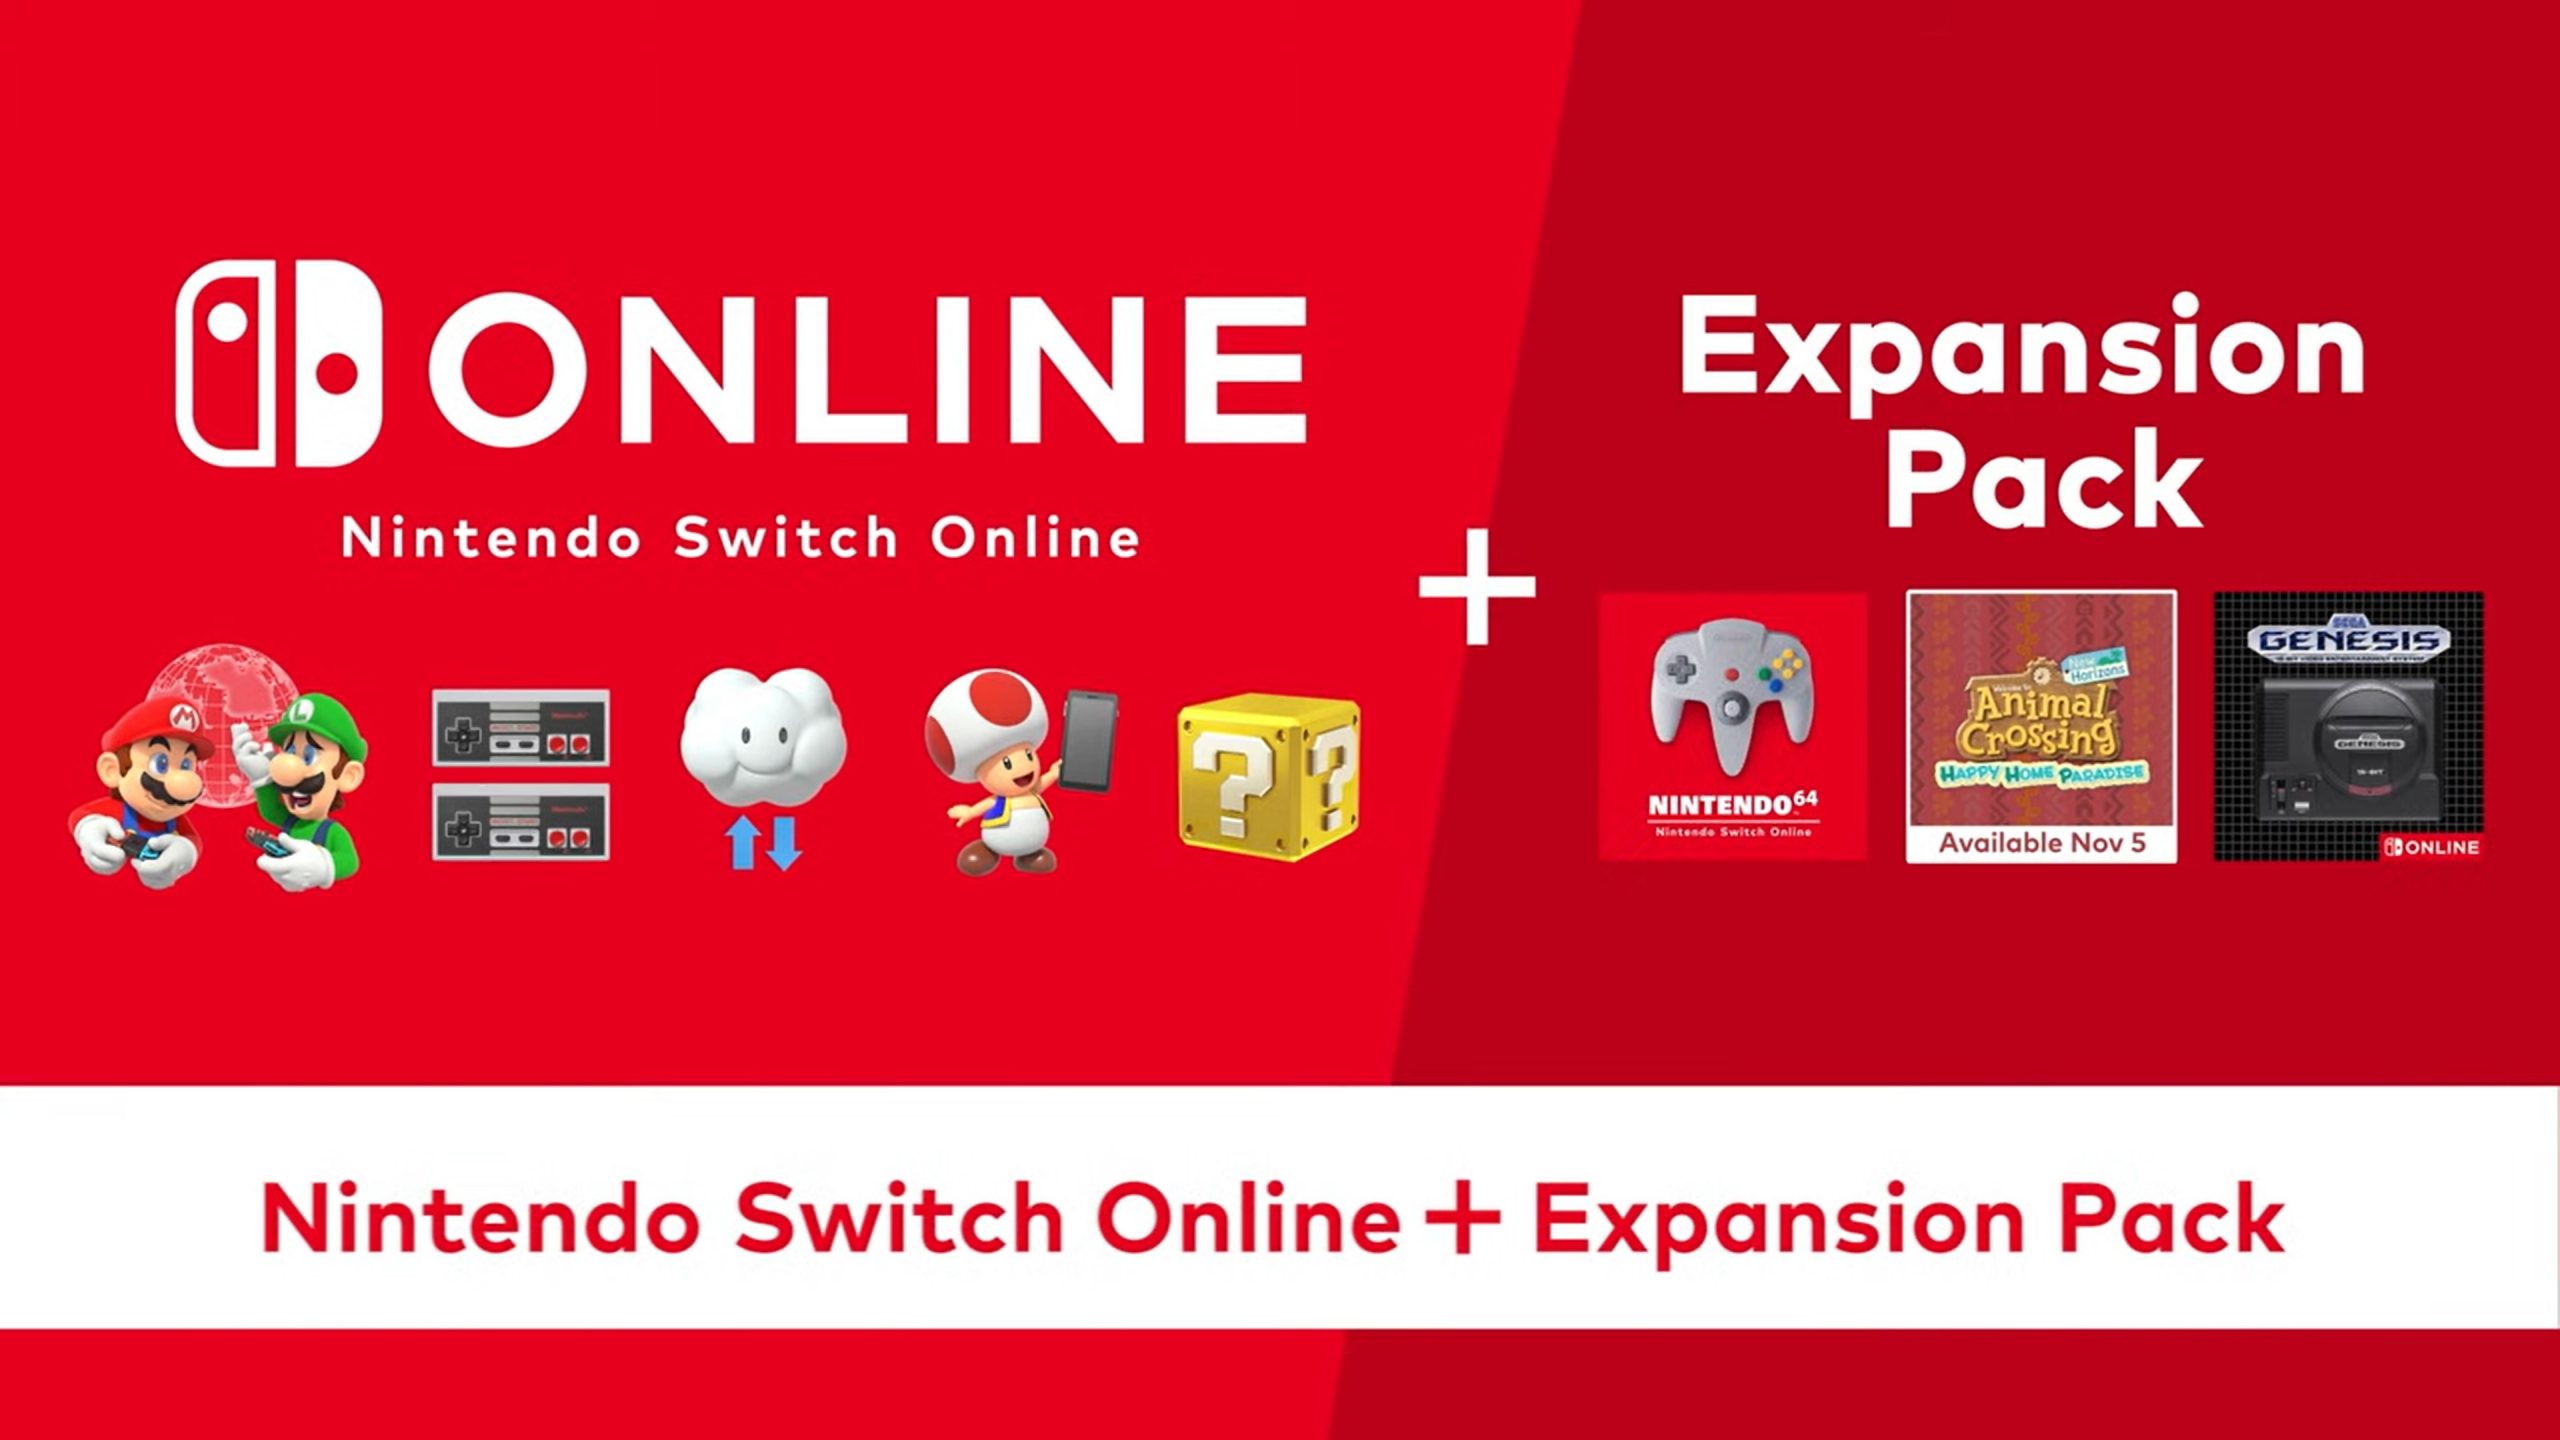 La Nintendo eShop ya es oficial en Chile, Perú, Colombia y Argentina